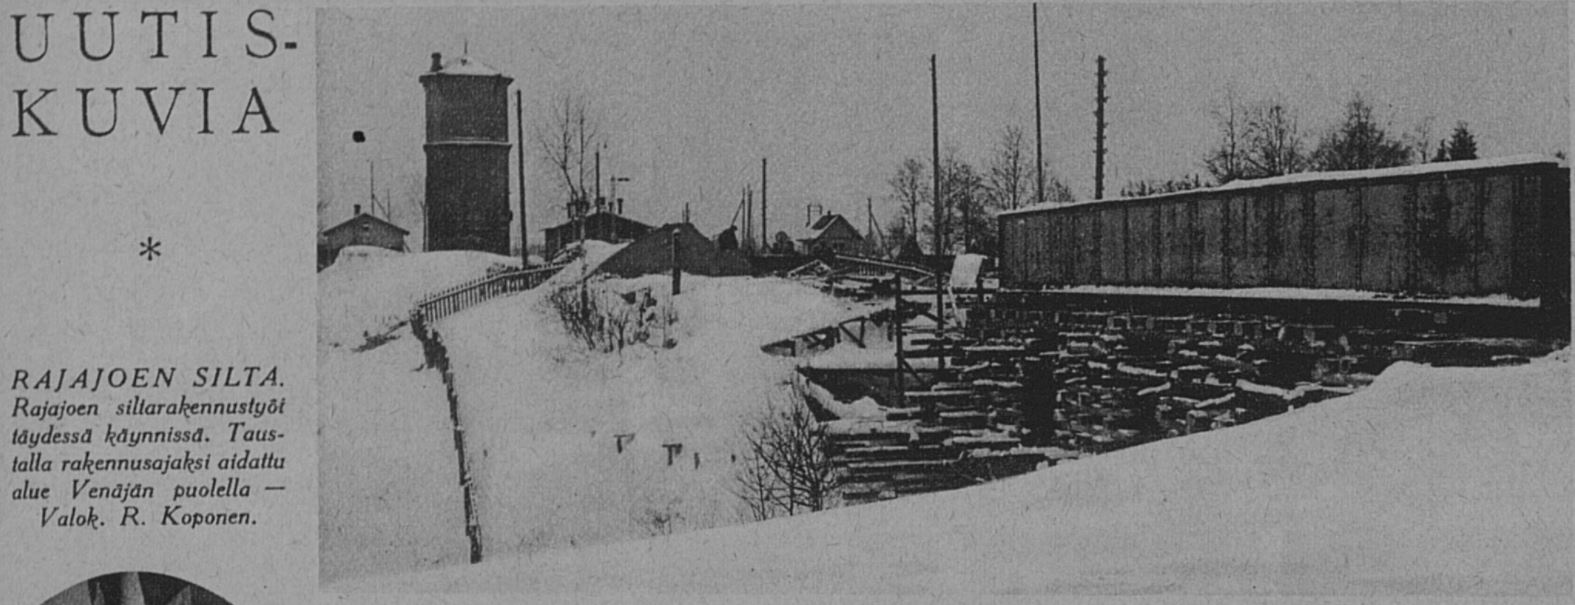 suomen-kuvalehti-1926-8.JPG